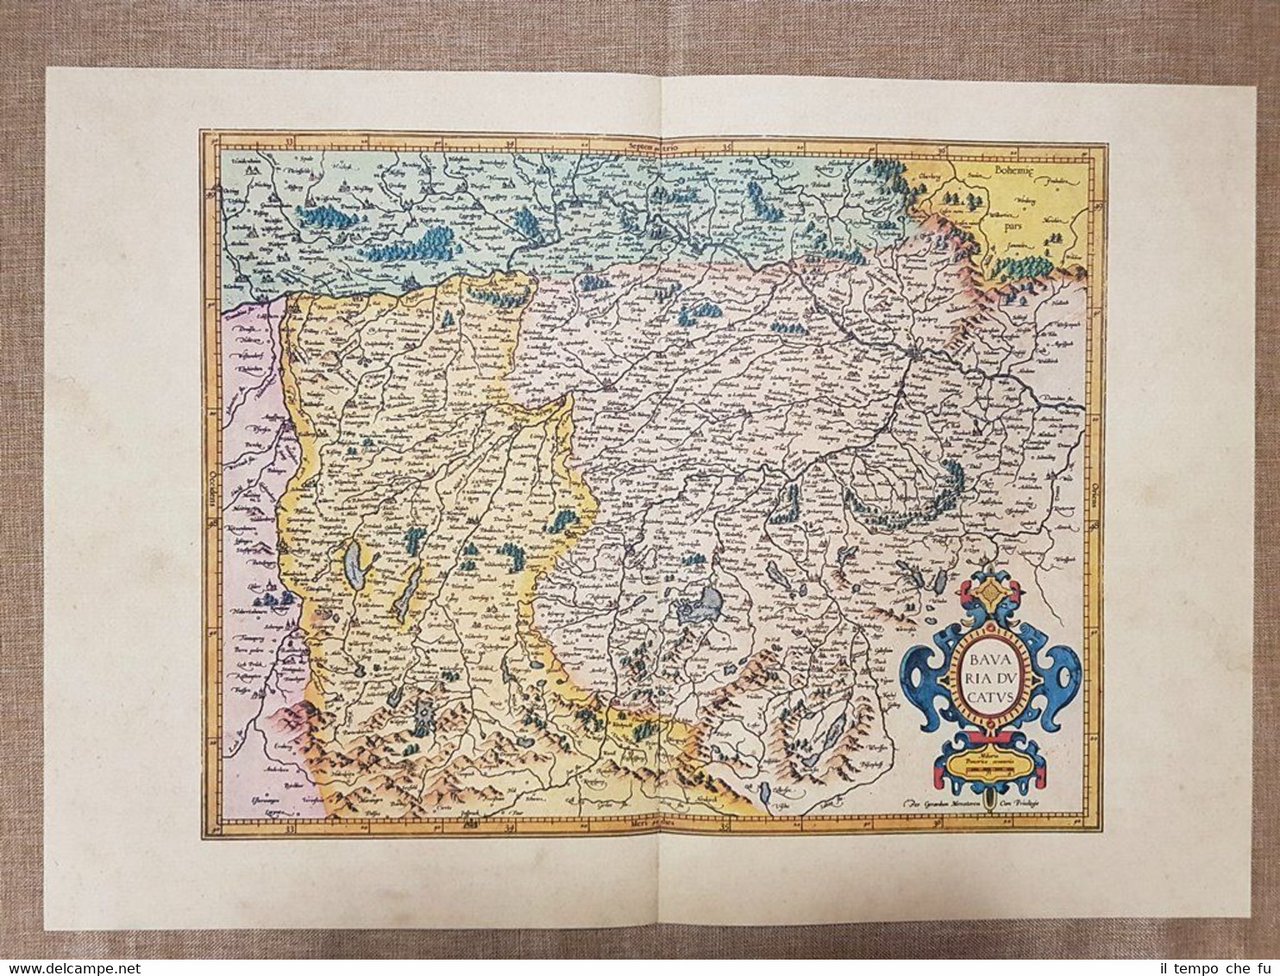 Carta geografica Ducato di Baviera Germania 1595 Mercatore o Mercator …